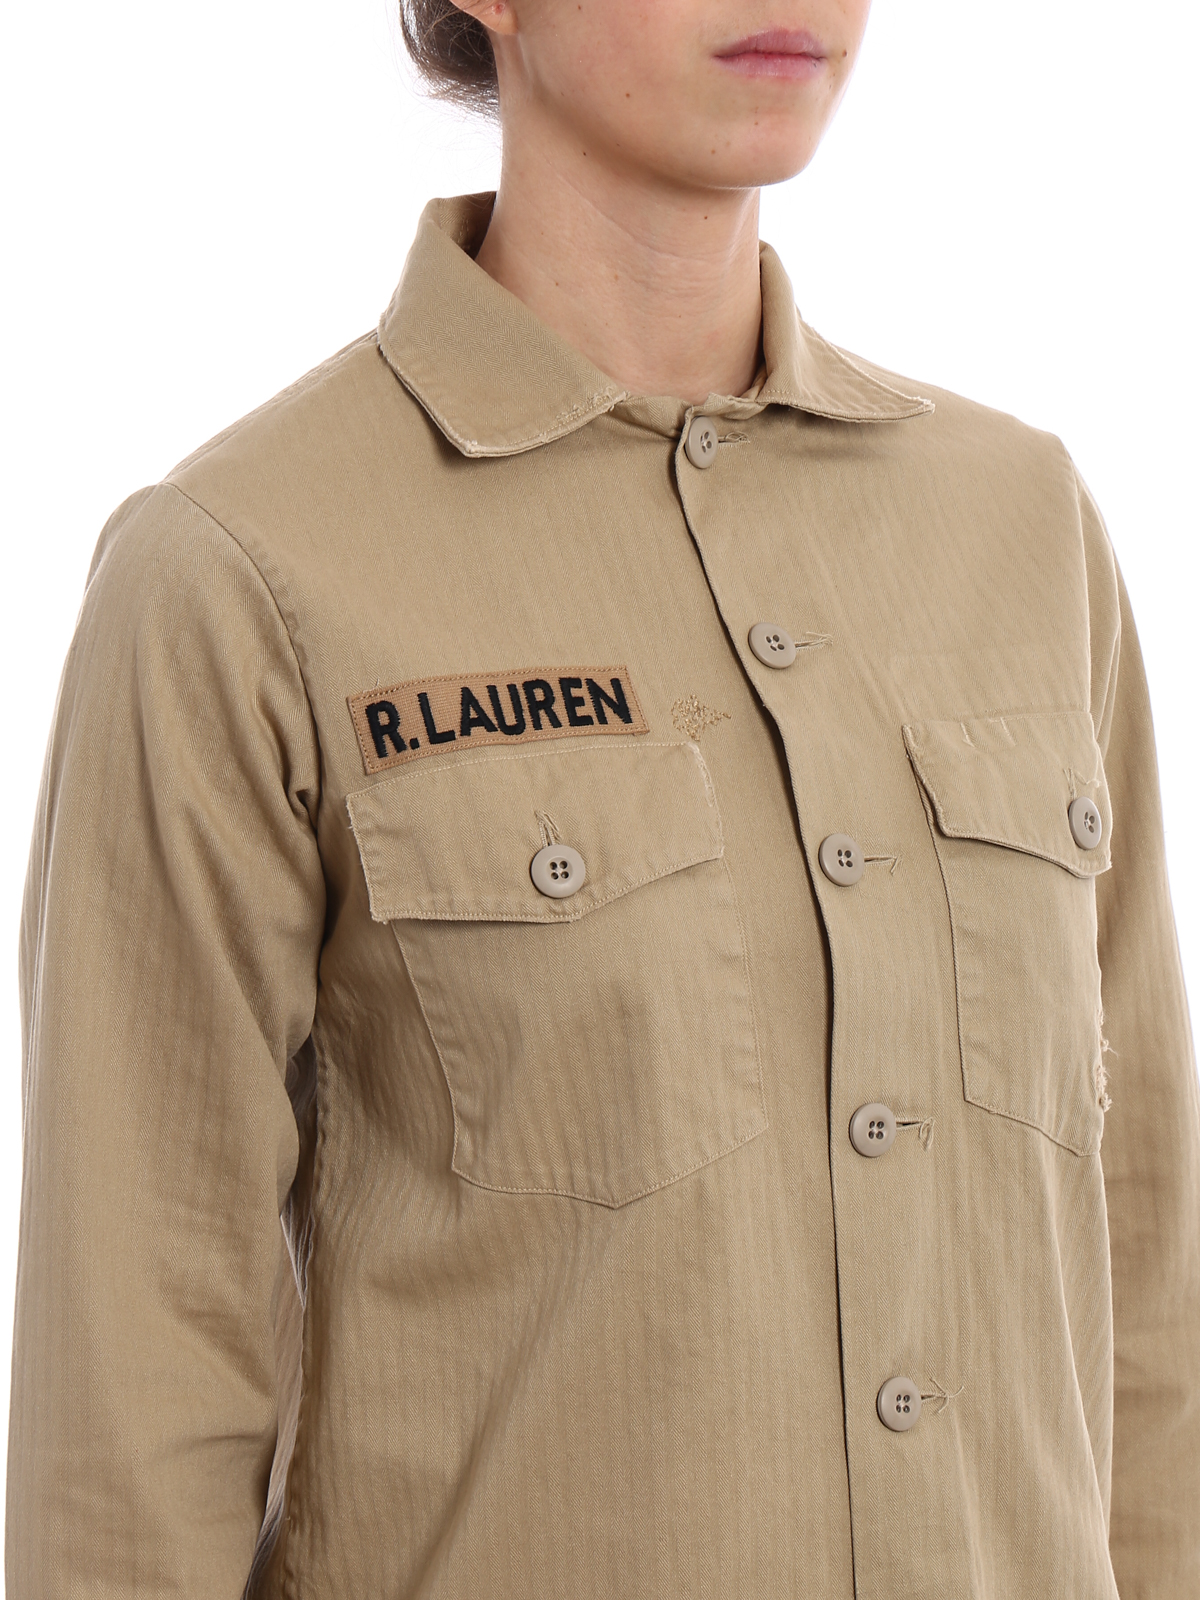 polo ralph lauren shirt jacket